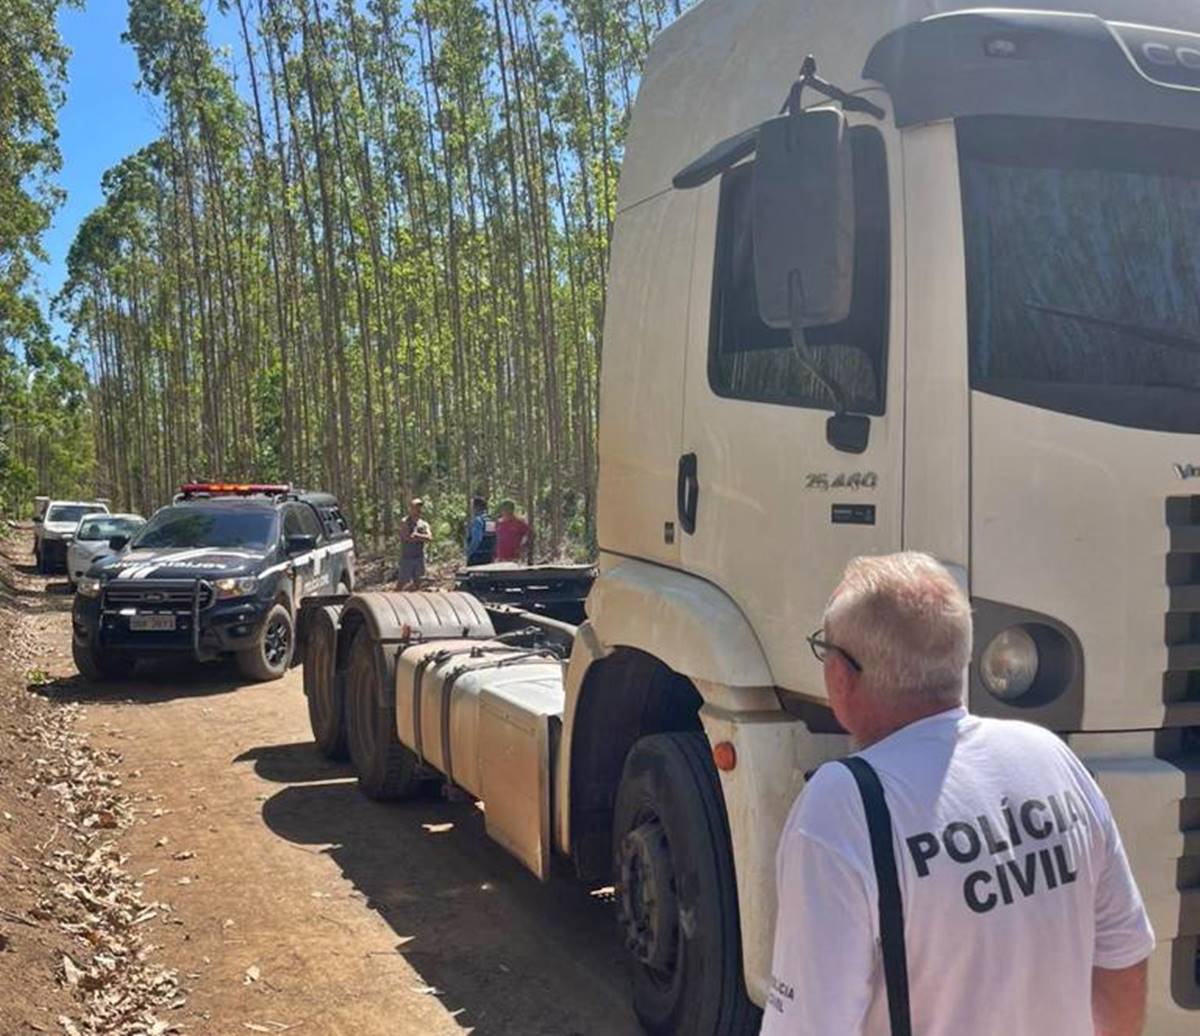 Policia-prende-bandidos-que-roubaram-caminhoes-na-Regiao-Serrana